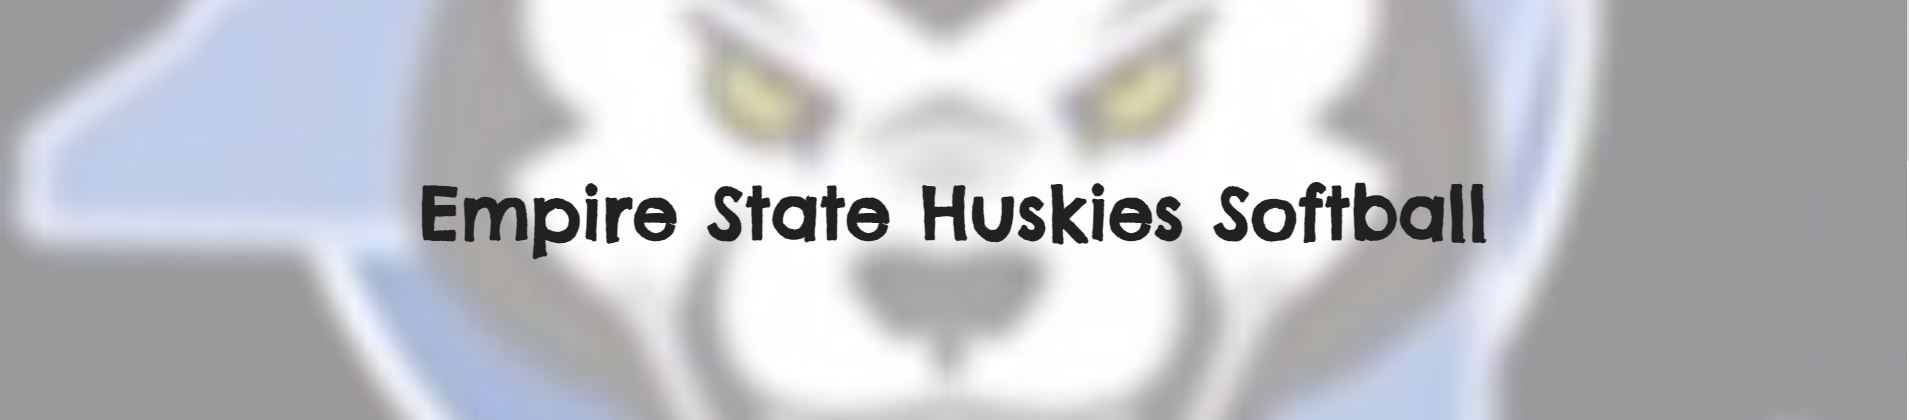 Empire State Huskies